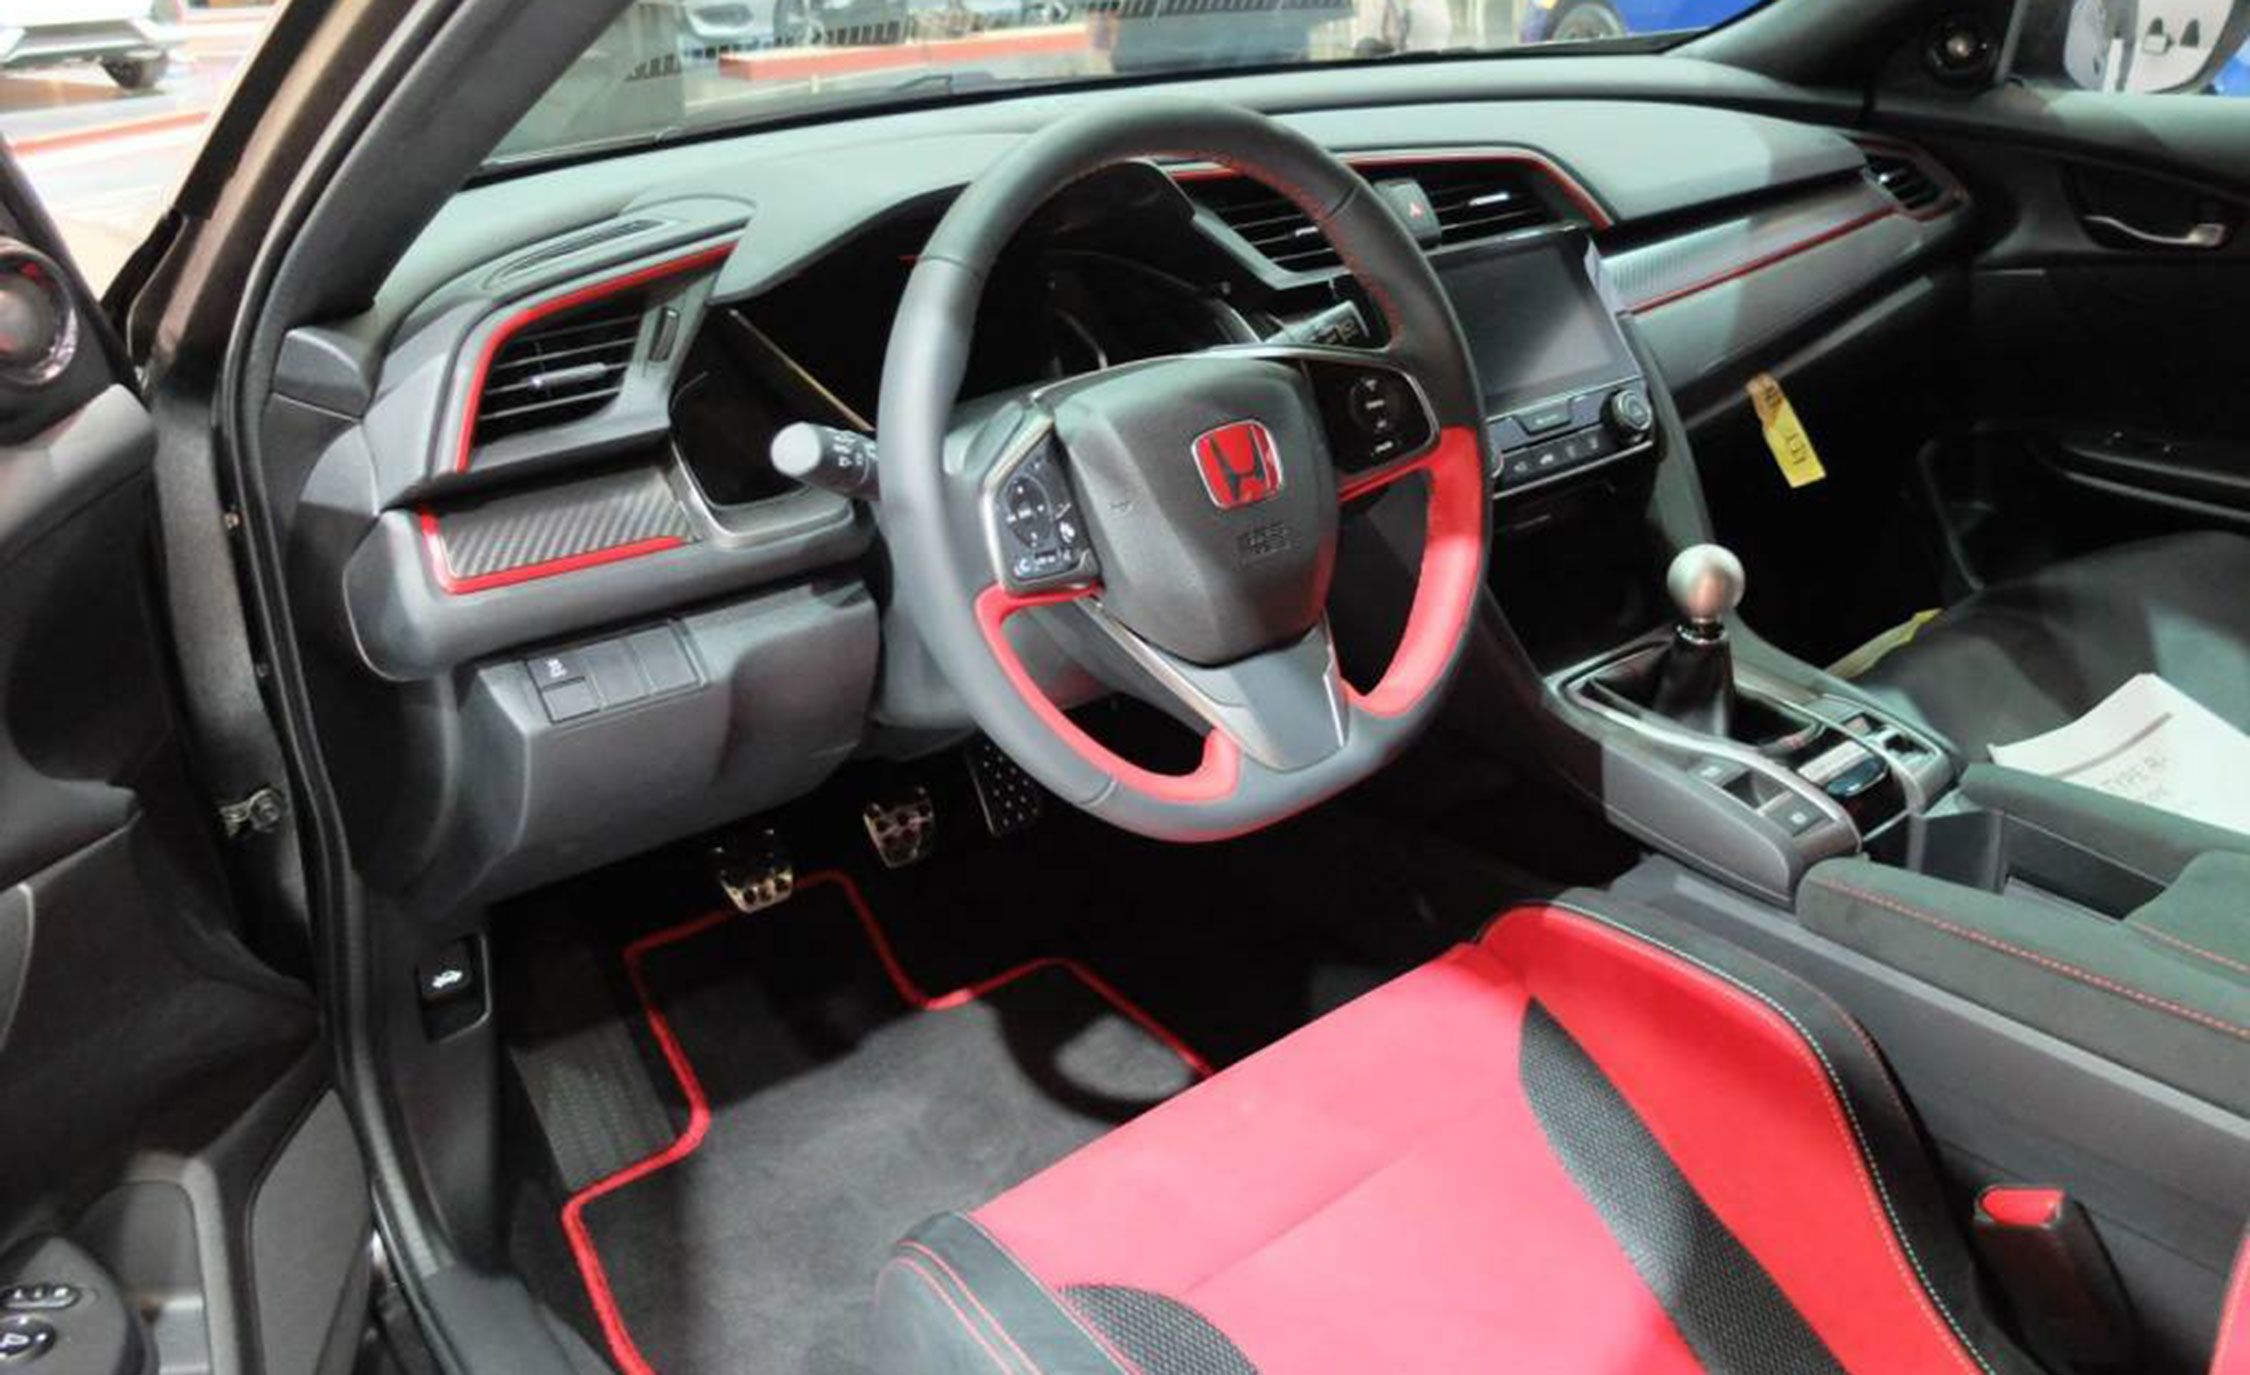 07 Honda Civic Type R interior conversion | 8th Generation Honda Civic Forum